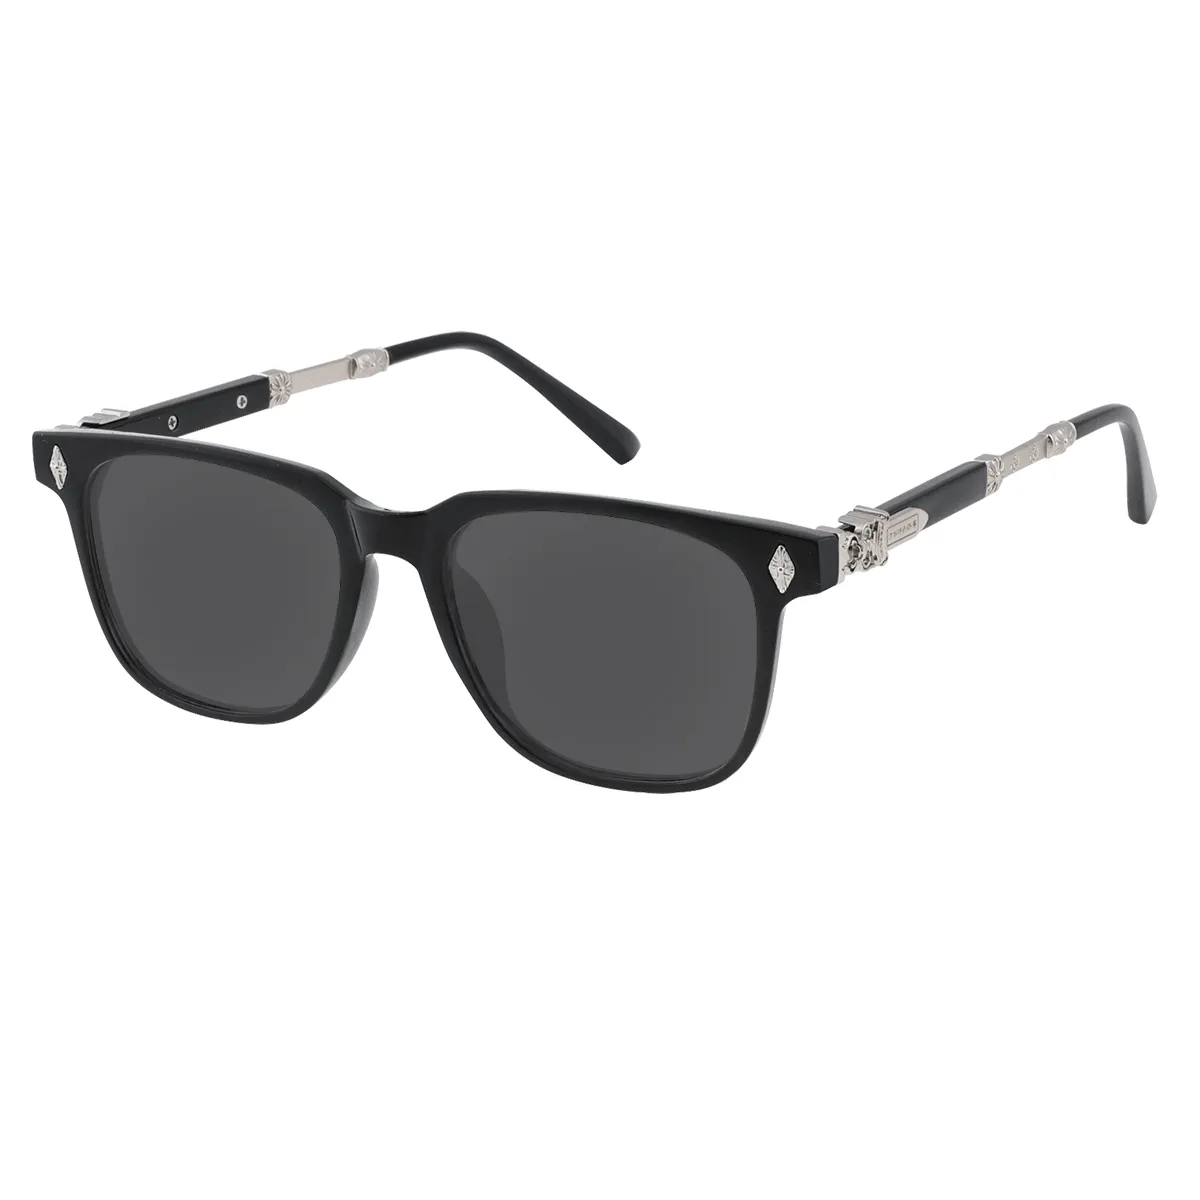 Nicolle - Square Black Sunglasses for Men